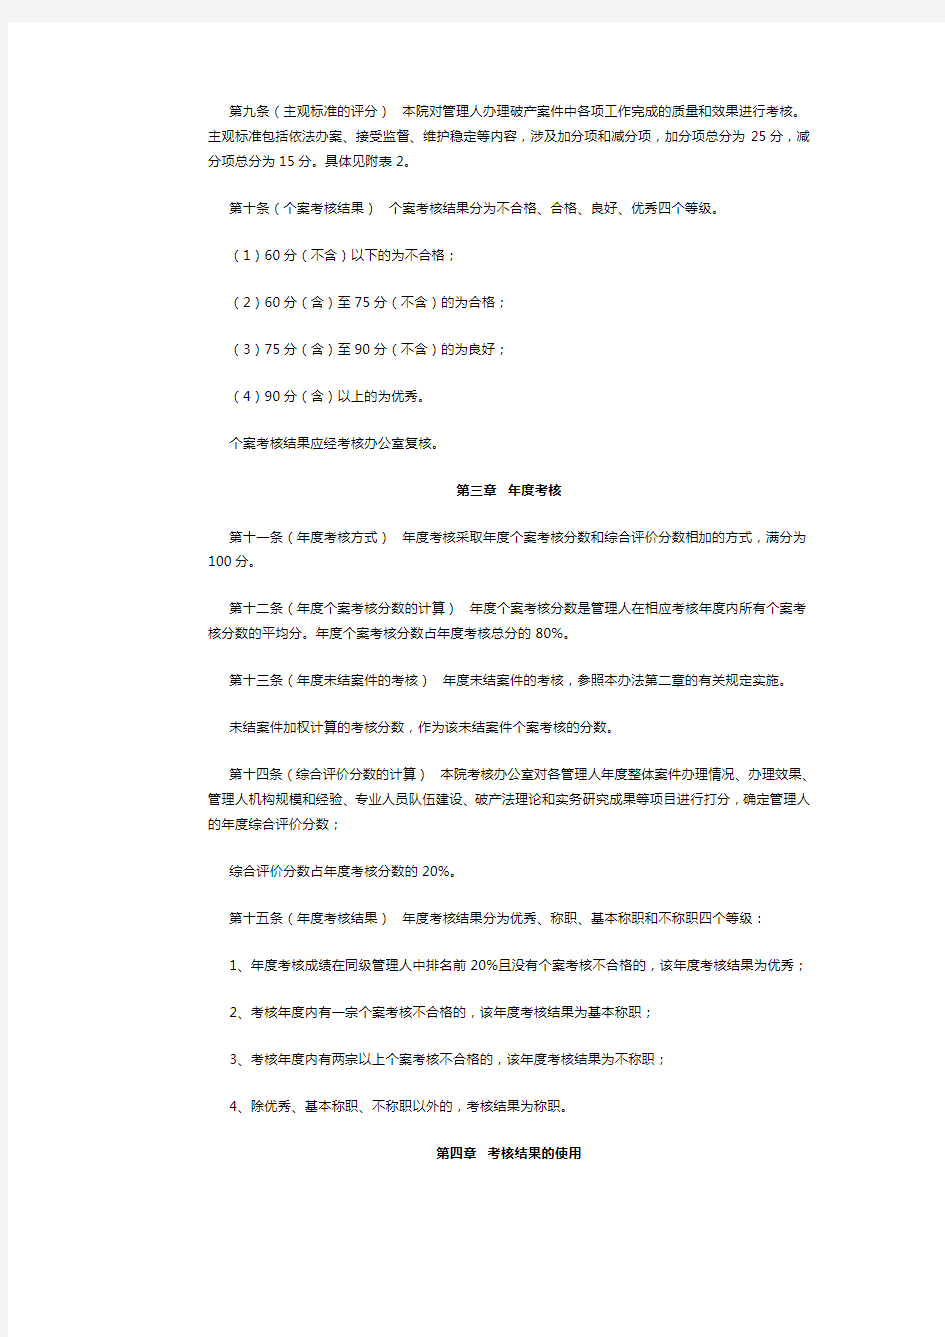 深圳市中级人民法院破产案件管理人考核办法